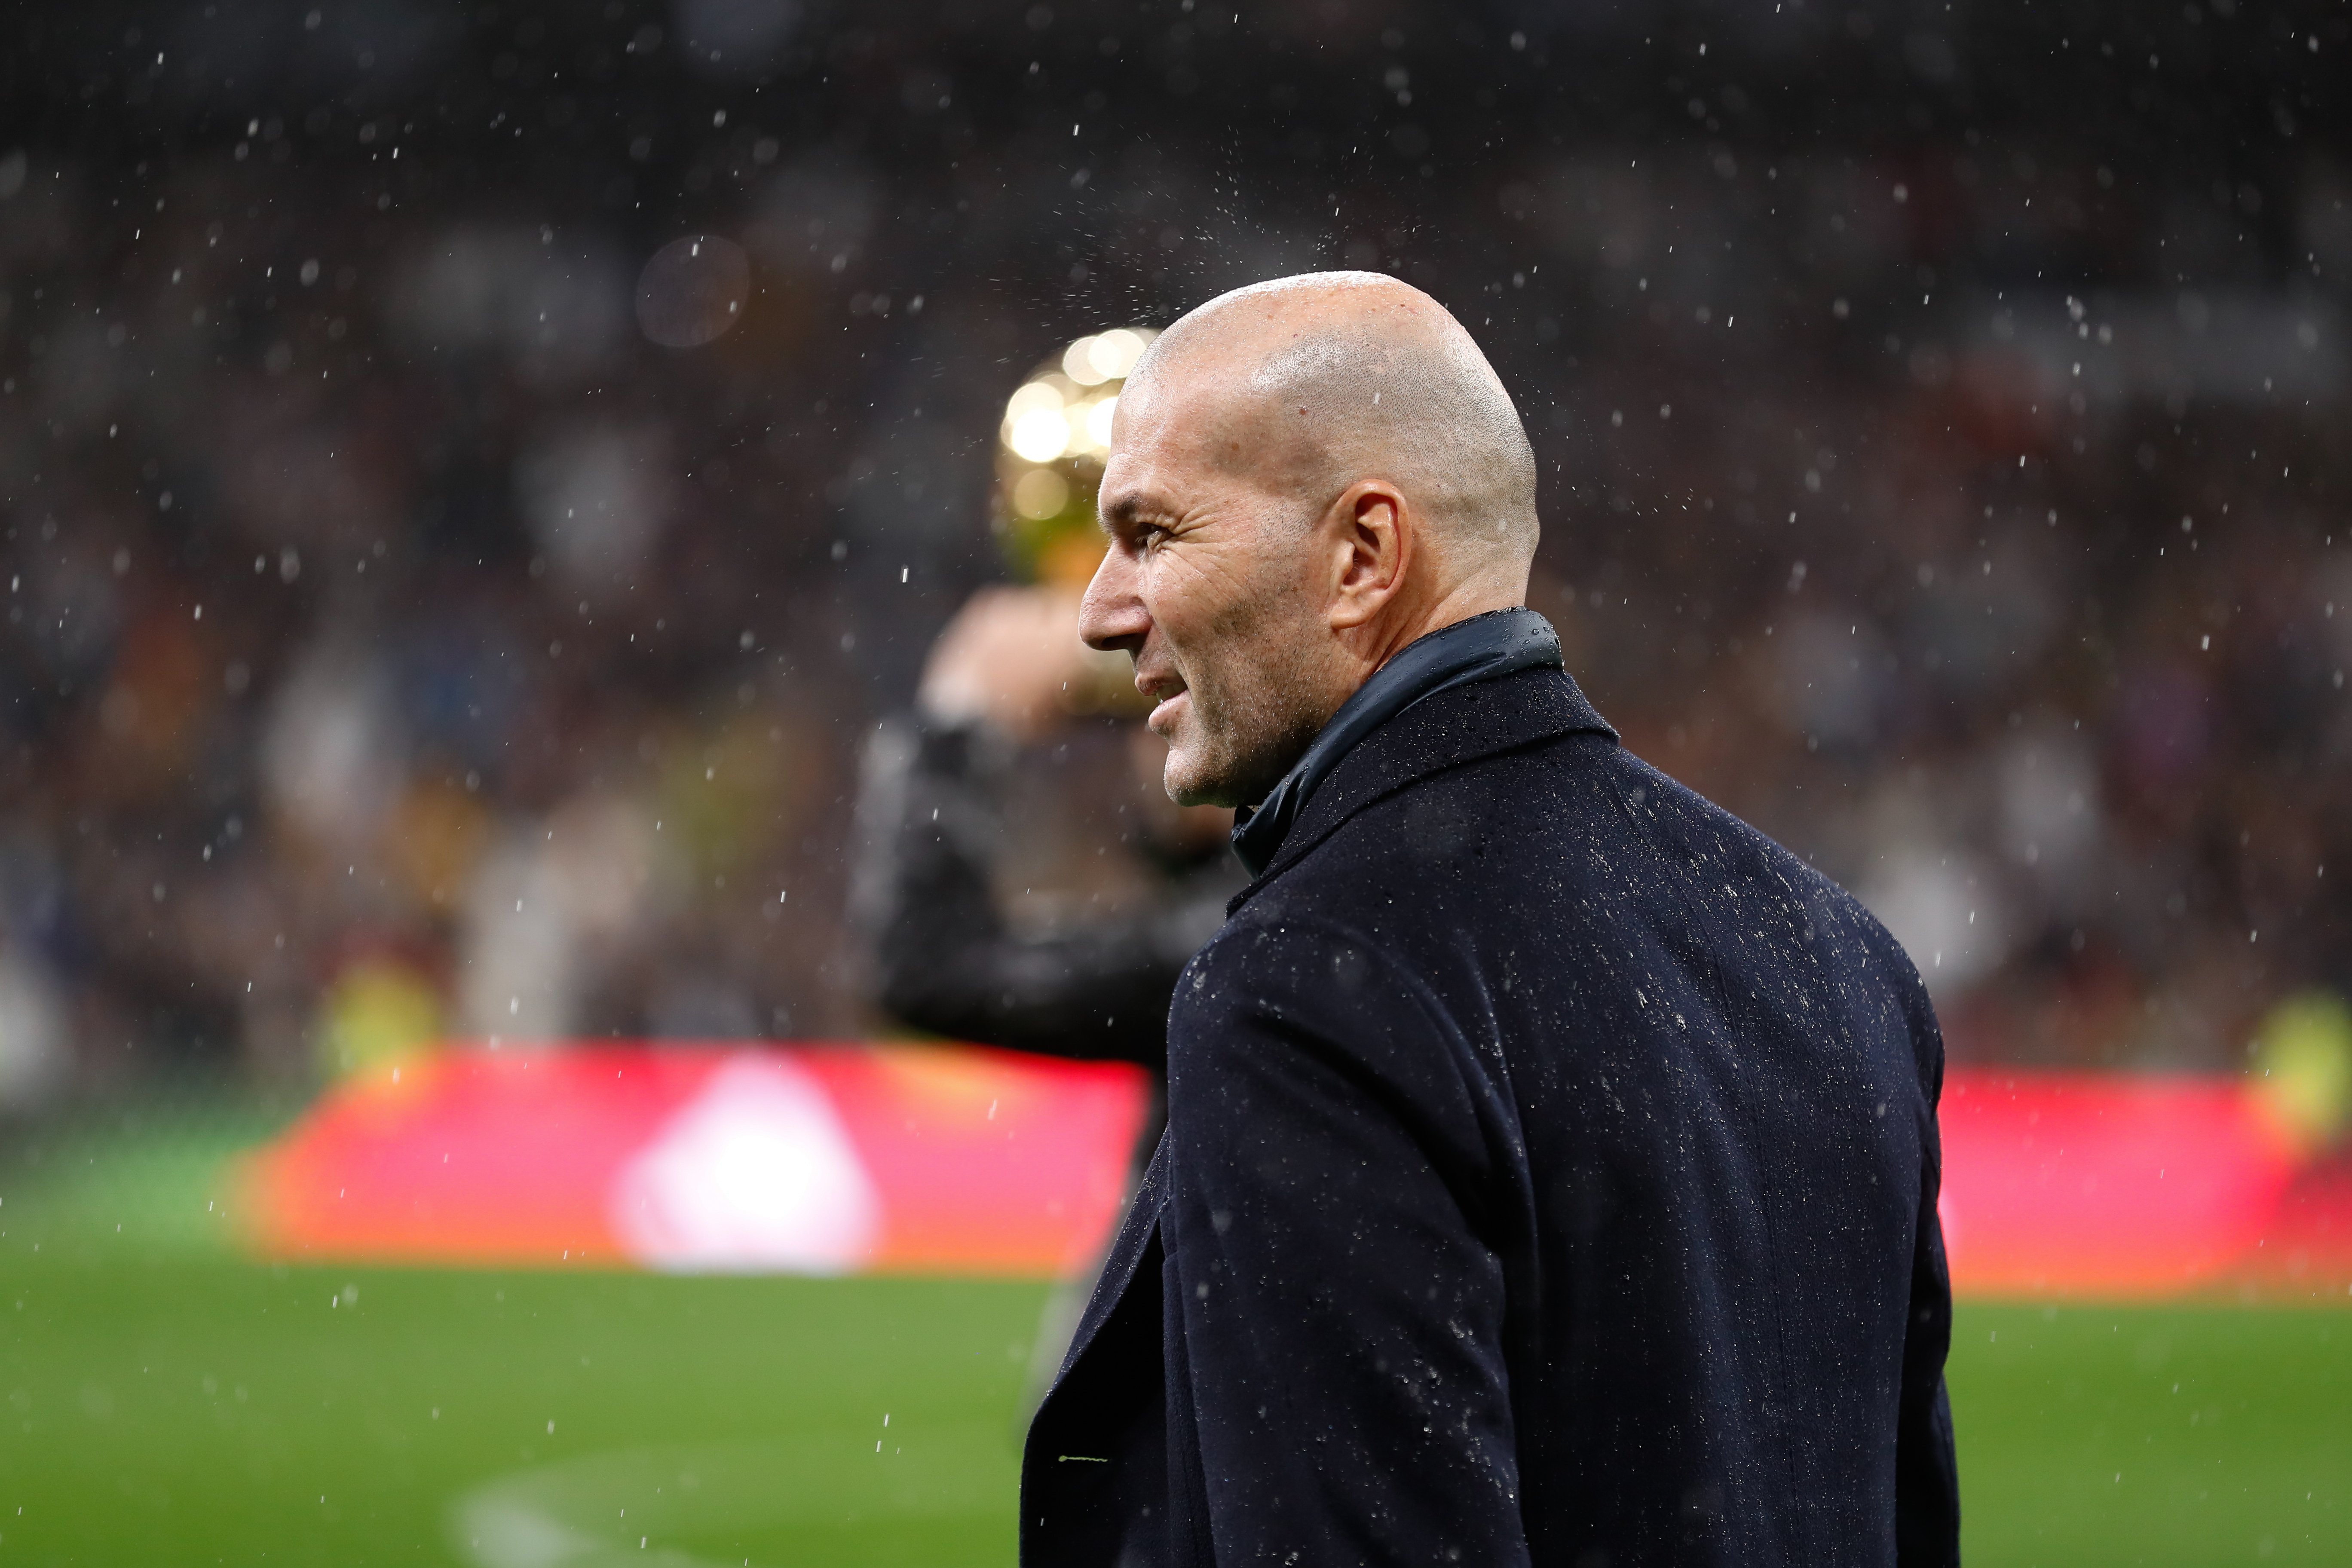 Zidane, 3 ofertes, una d'elles faria molt mal al Reial Madrid